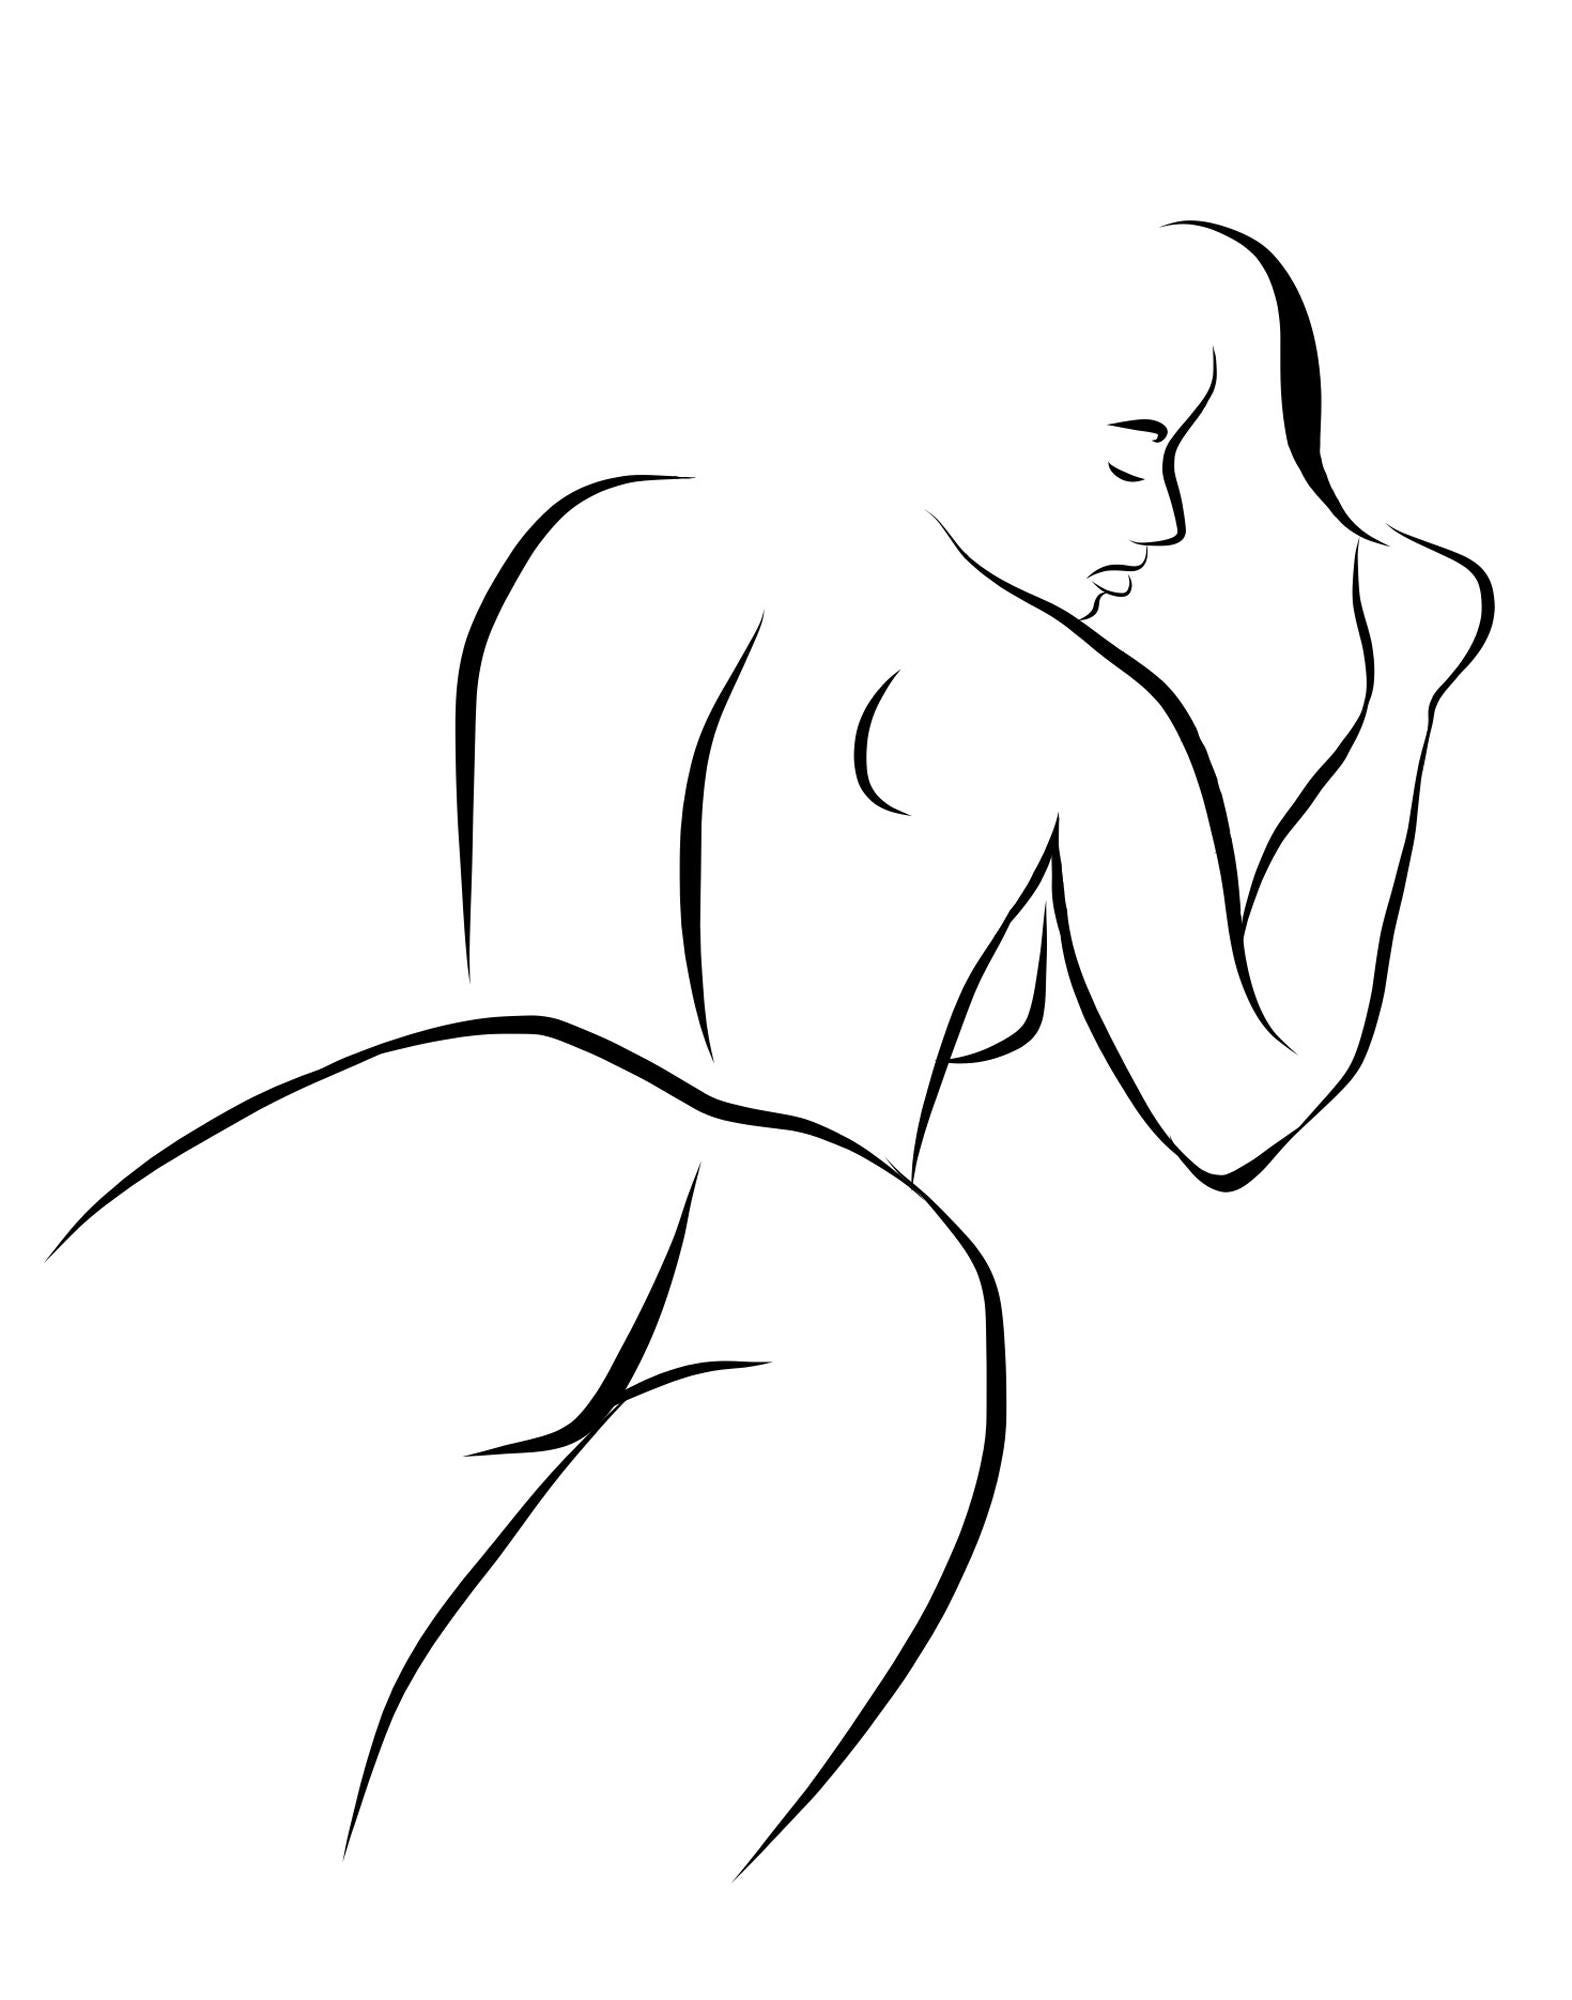 Michael Binkley Nude Print – Haiku #10, 1/50 - Digital Vector Drawing B&W Liegende weibliche nackte Frau Figur